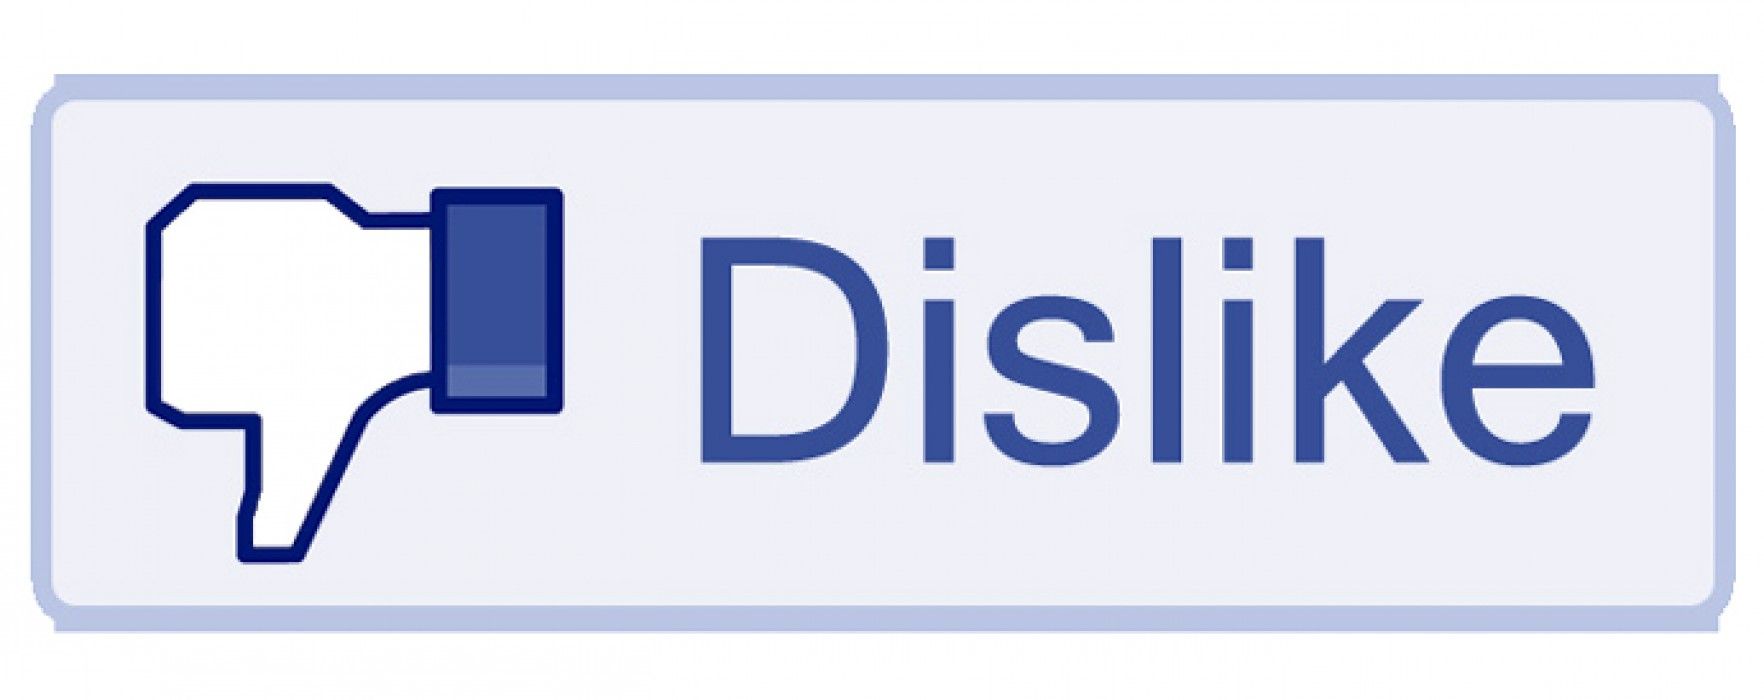 Facebook crearía botón de “No me gusta”